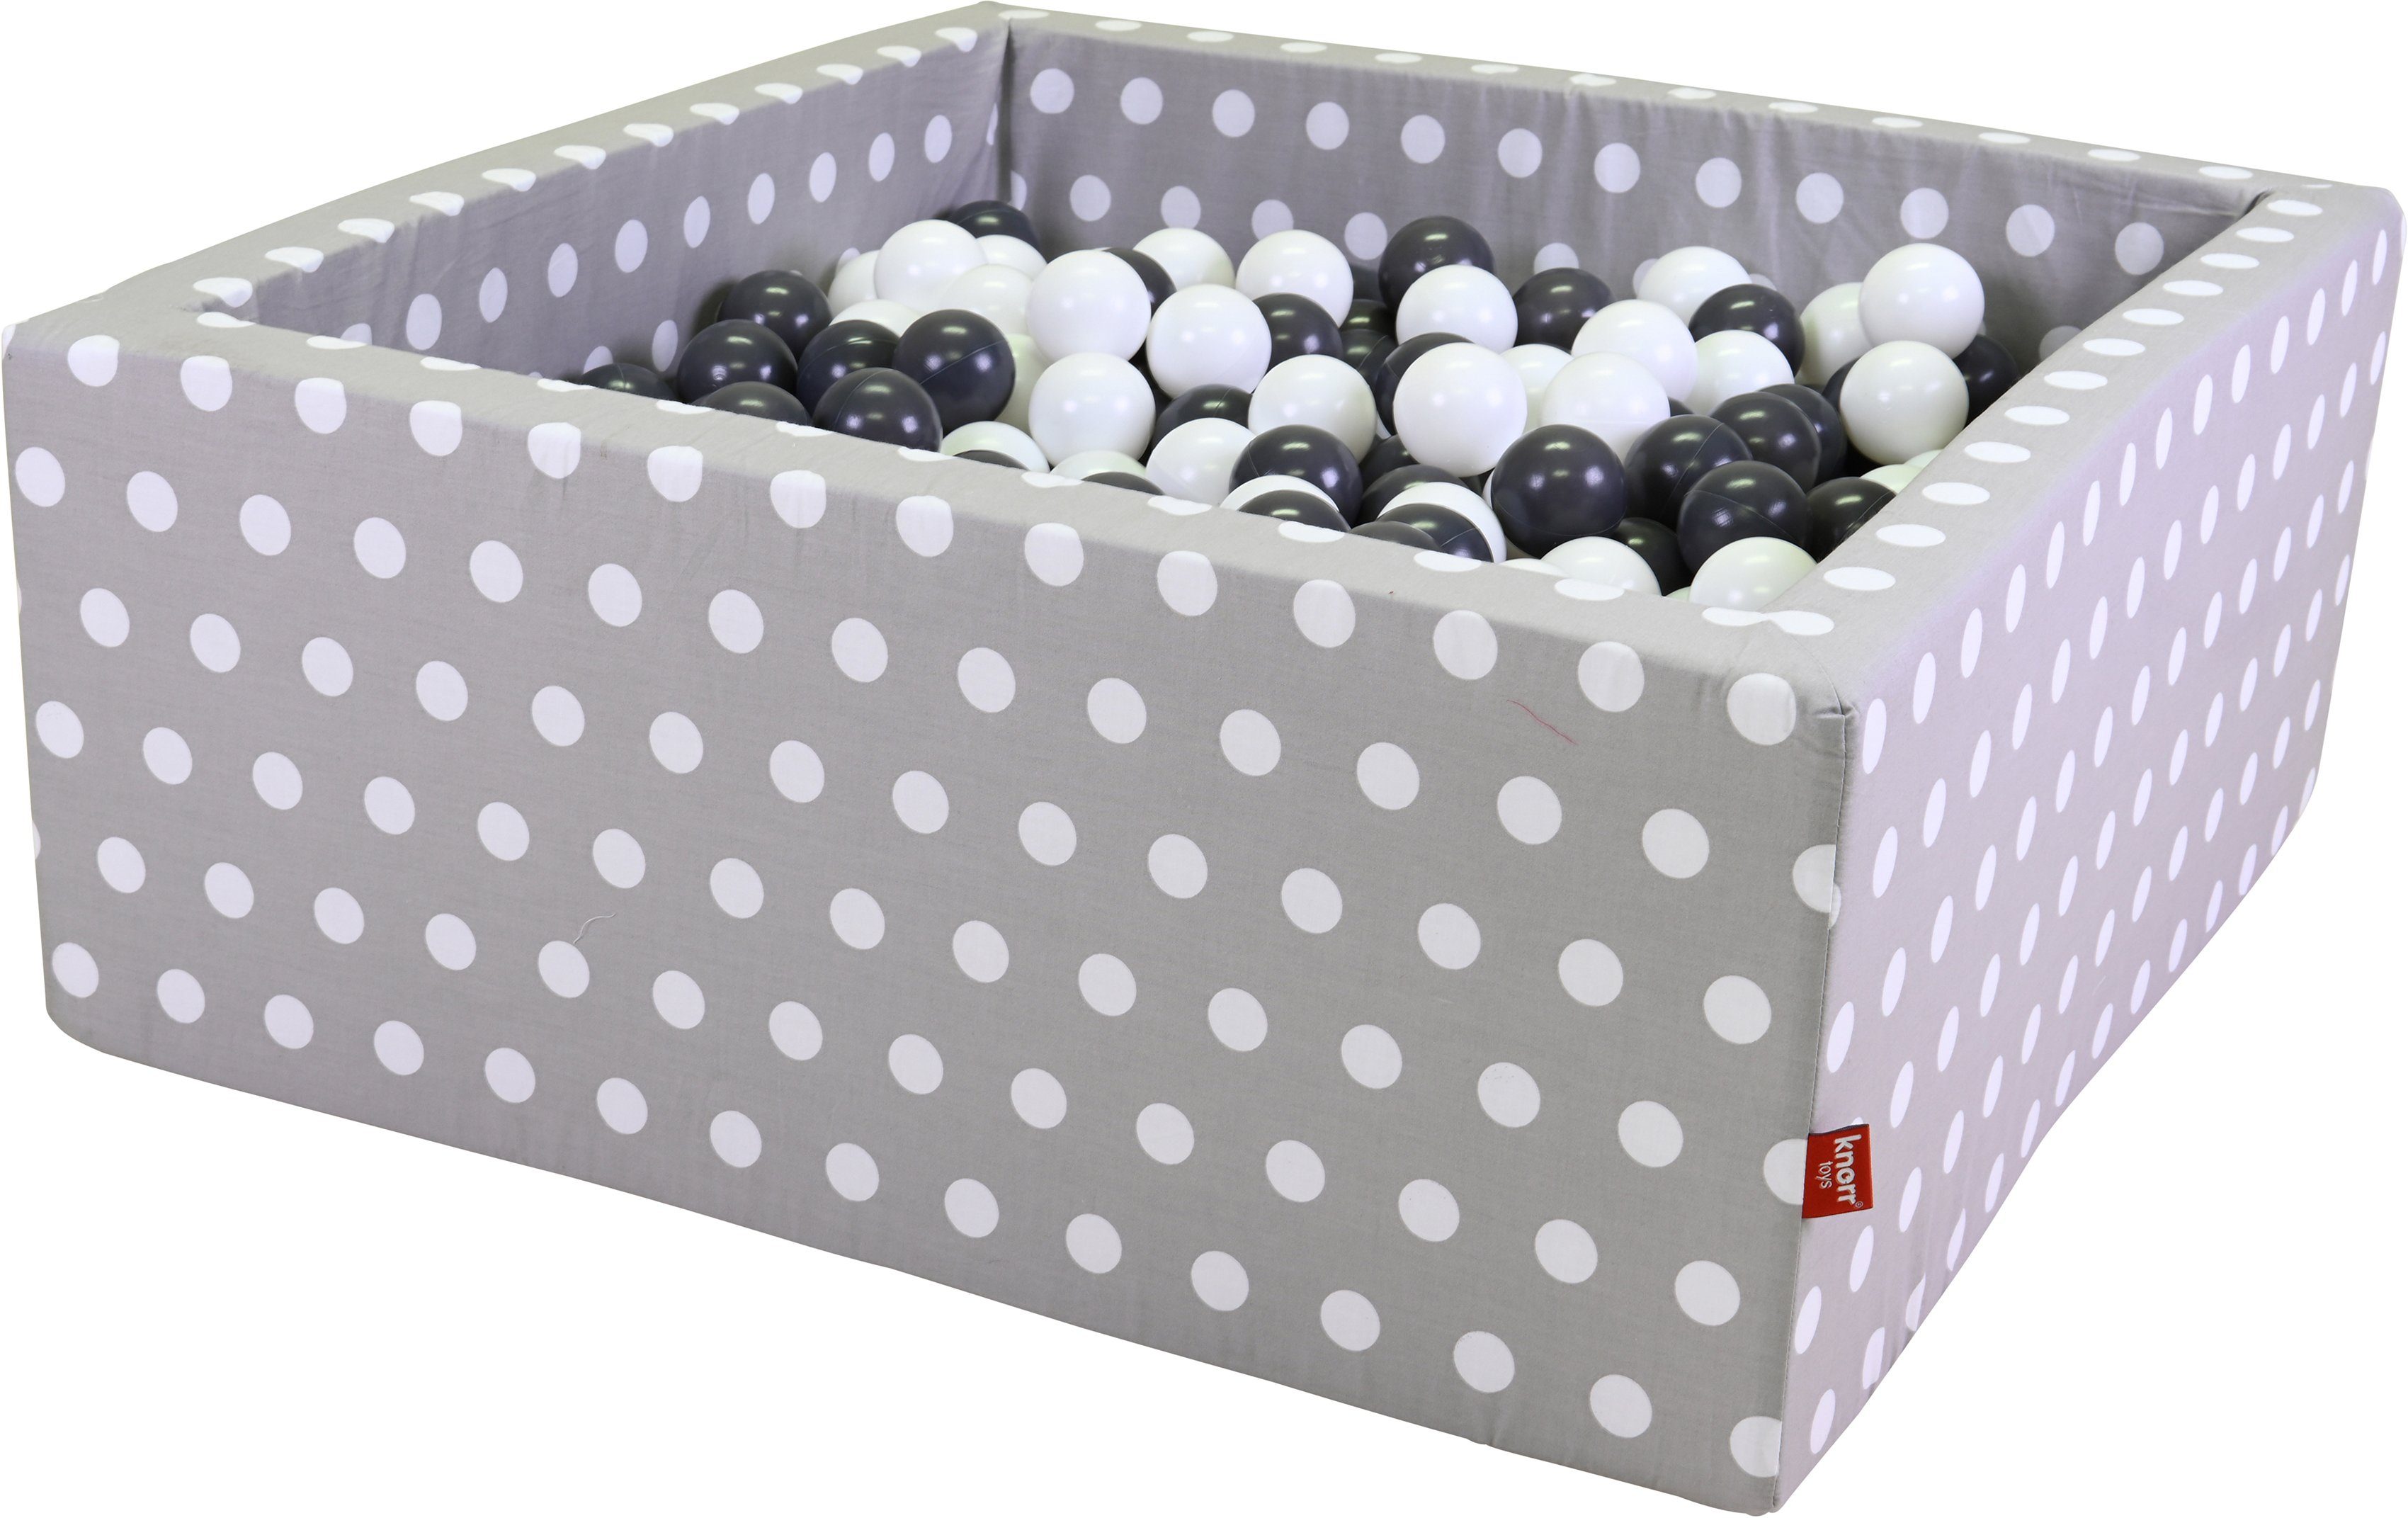 Knorrtoys® Ballenbak Soft, Grey white dots hoekig met 100 ballen grijs/crème, made in europe